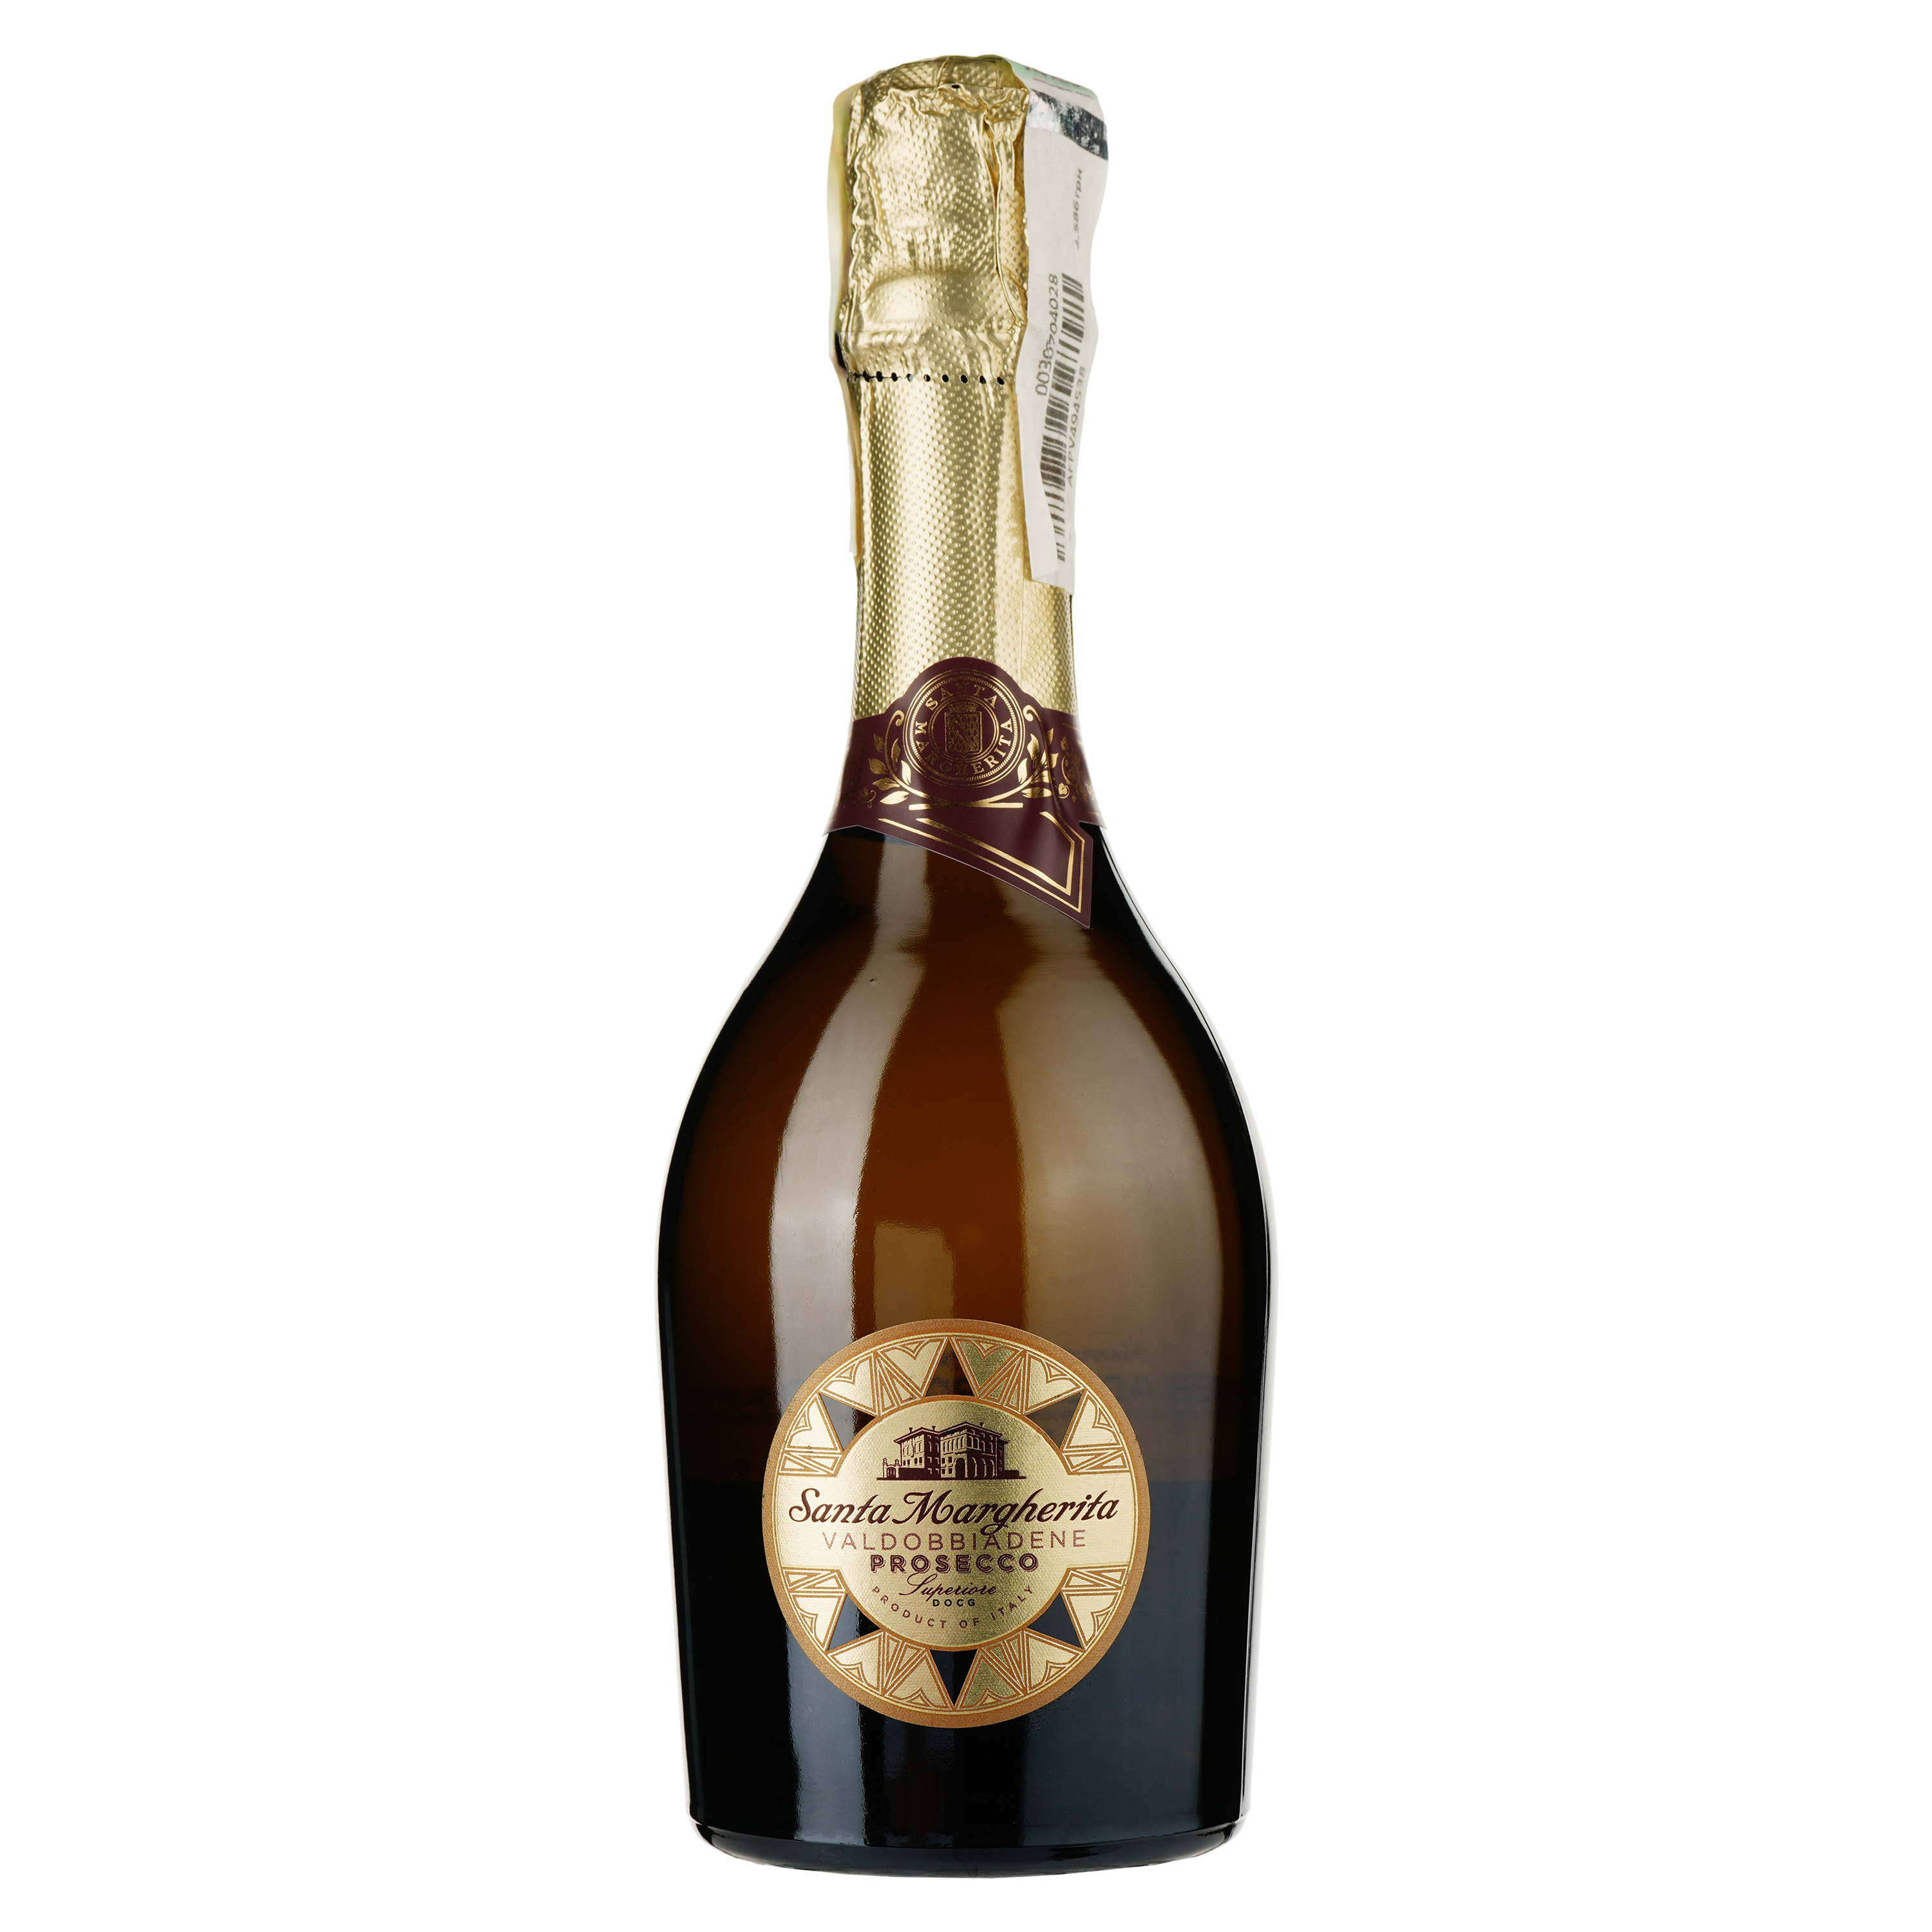 Ігристе вино Santa Margherita Valdobbiadene Prosecco Superiore DOCG, біле, брют, 11,5%, 0,375 л - фото 1